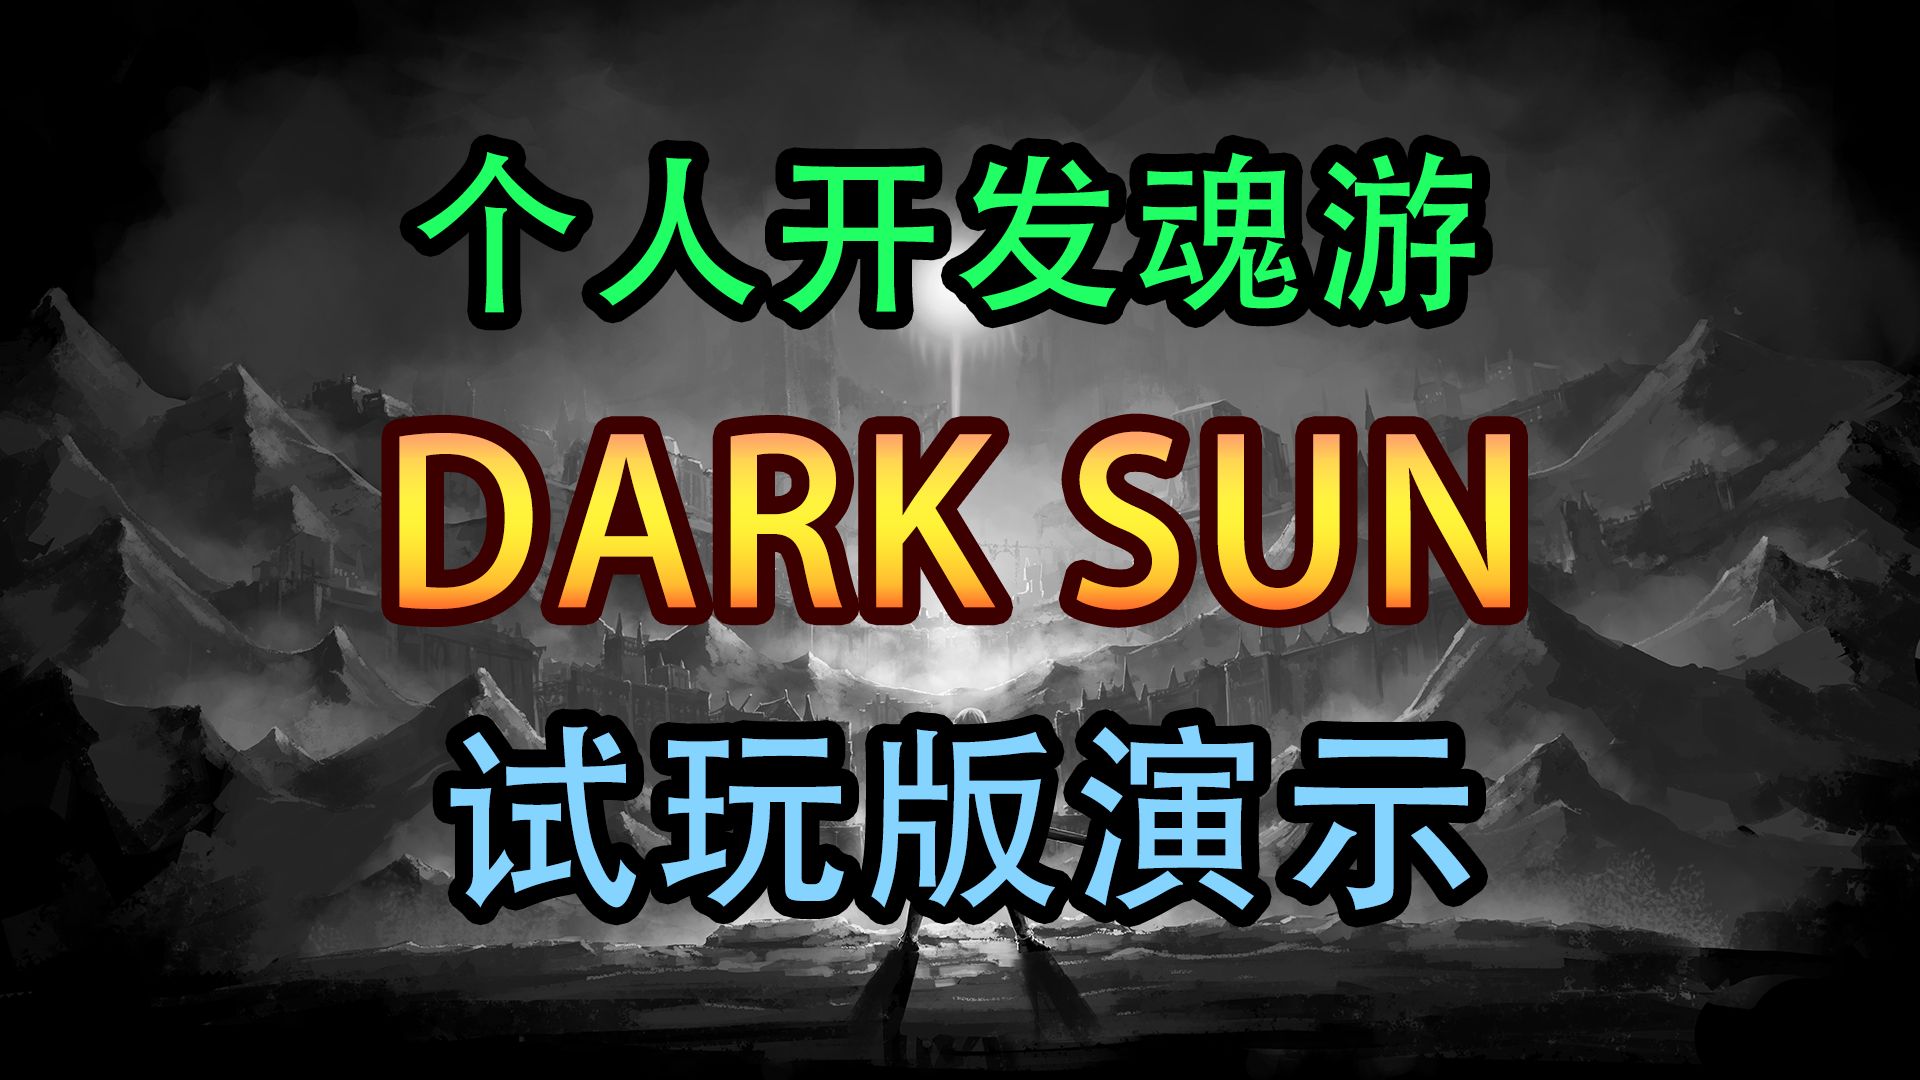 独立游戏【DARK SUN】测试版演示。STEAM商店页面已上架。